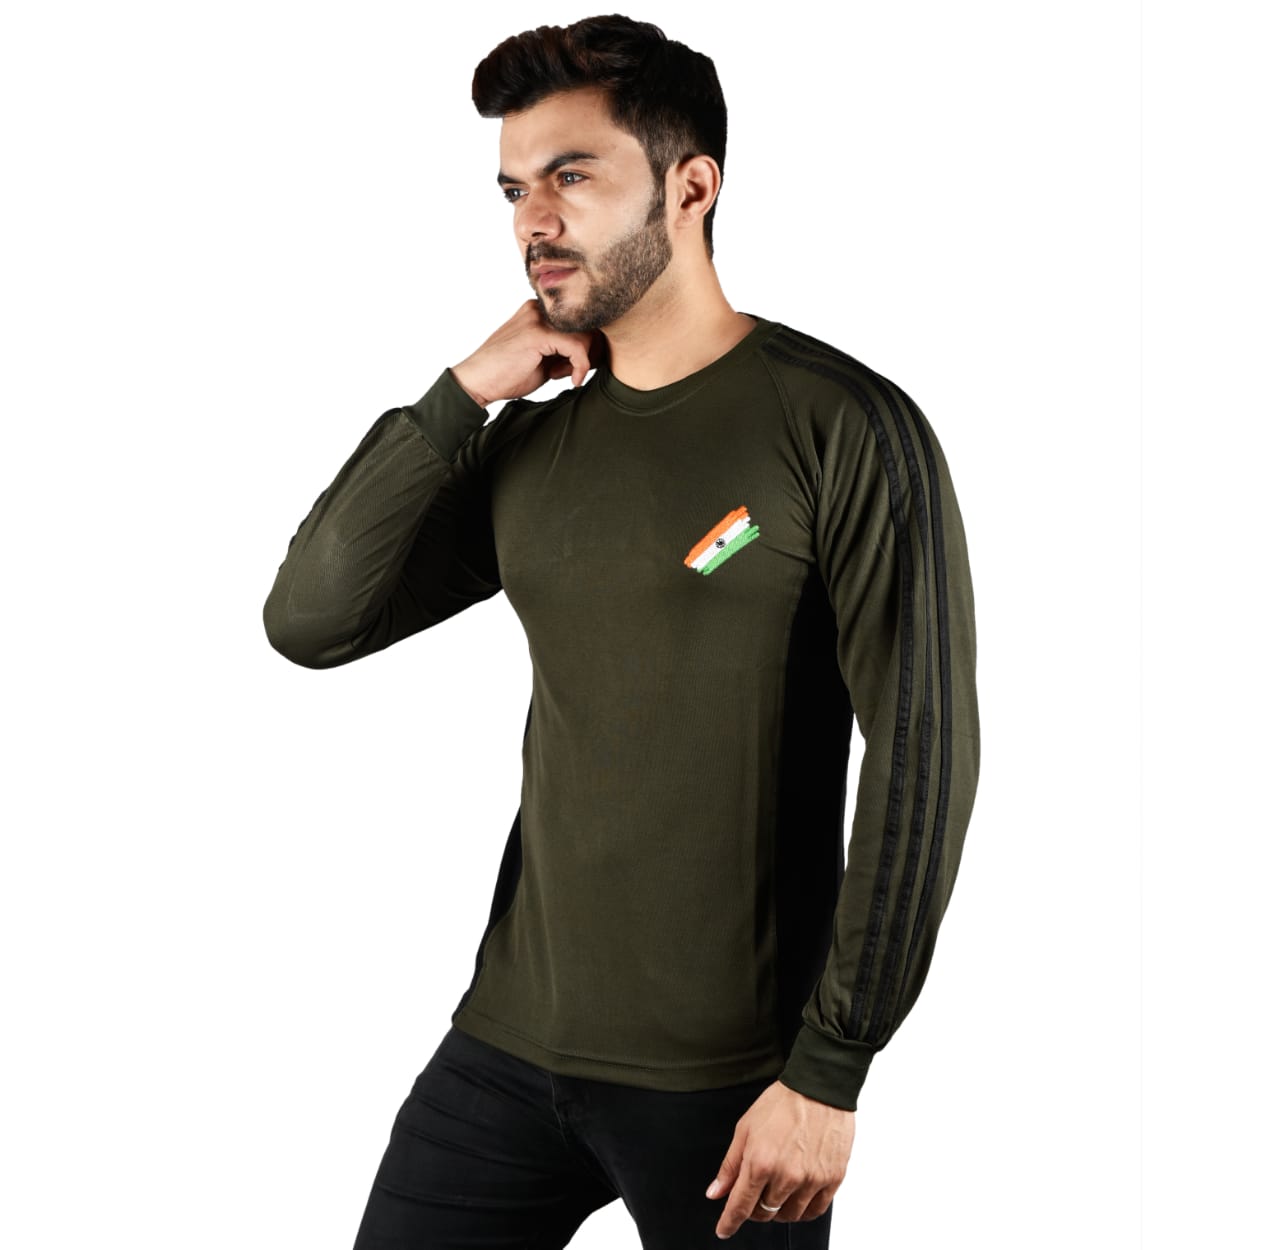 COMMANDO Tiranga Logo Round Neck OG Olive Green T Shirt Full Sleeve Army Military Defence